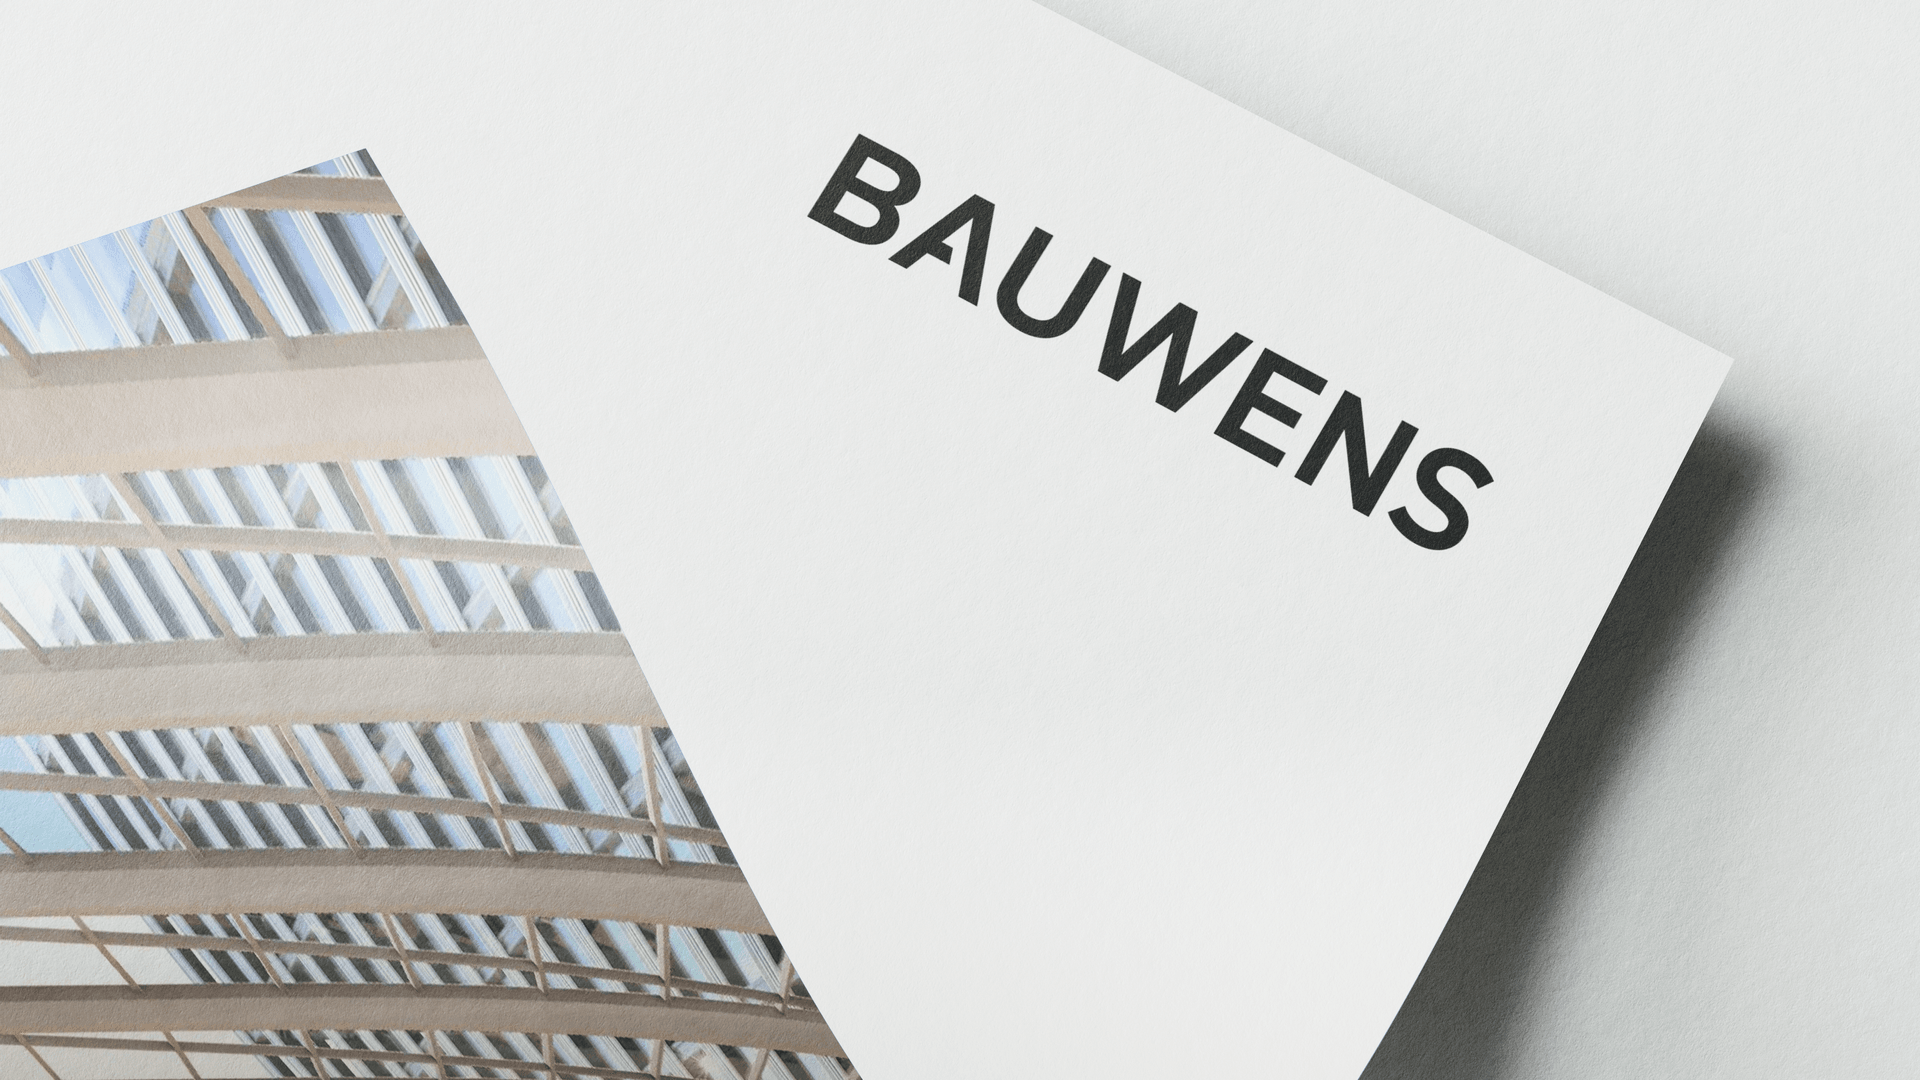 Das BAUWENS Logo im Zusammenhang mit einer Referenz von der Agentur Königspunkt.
				